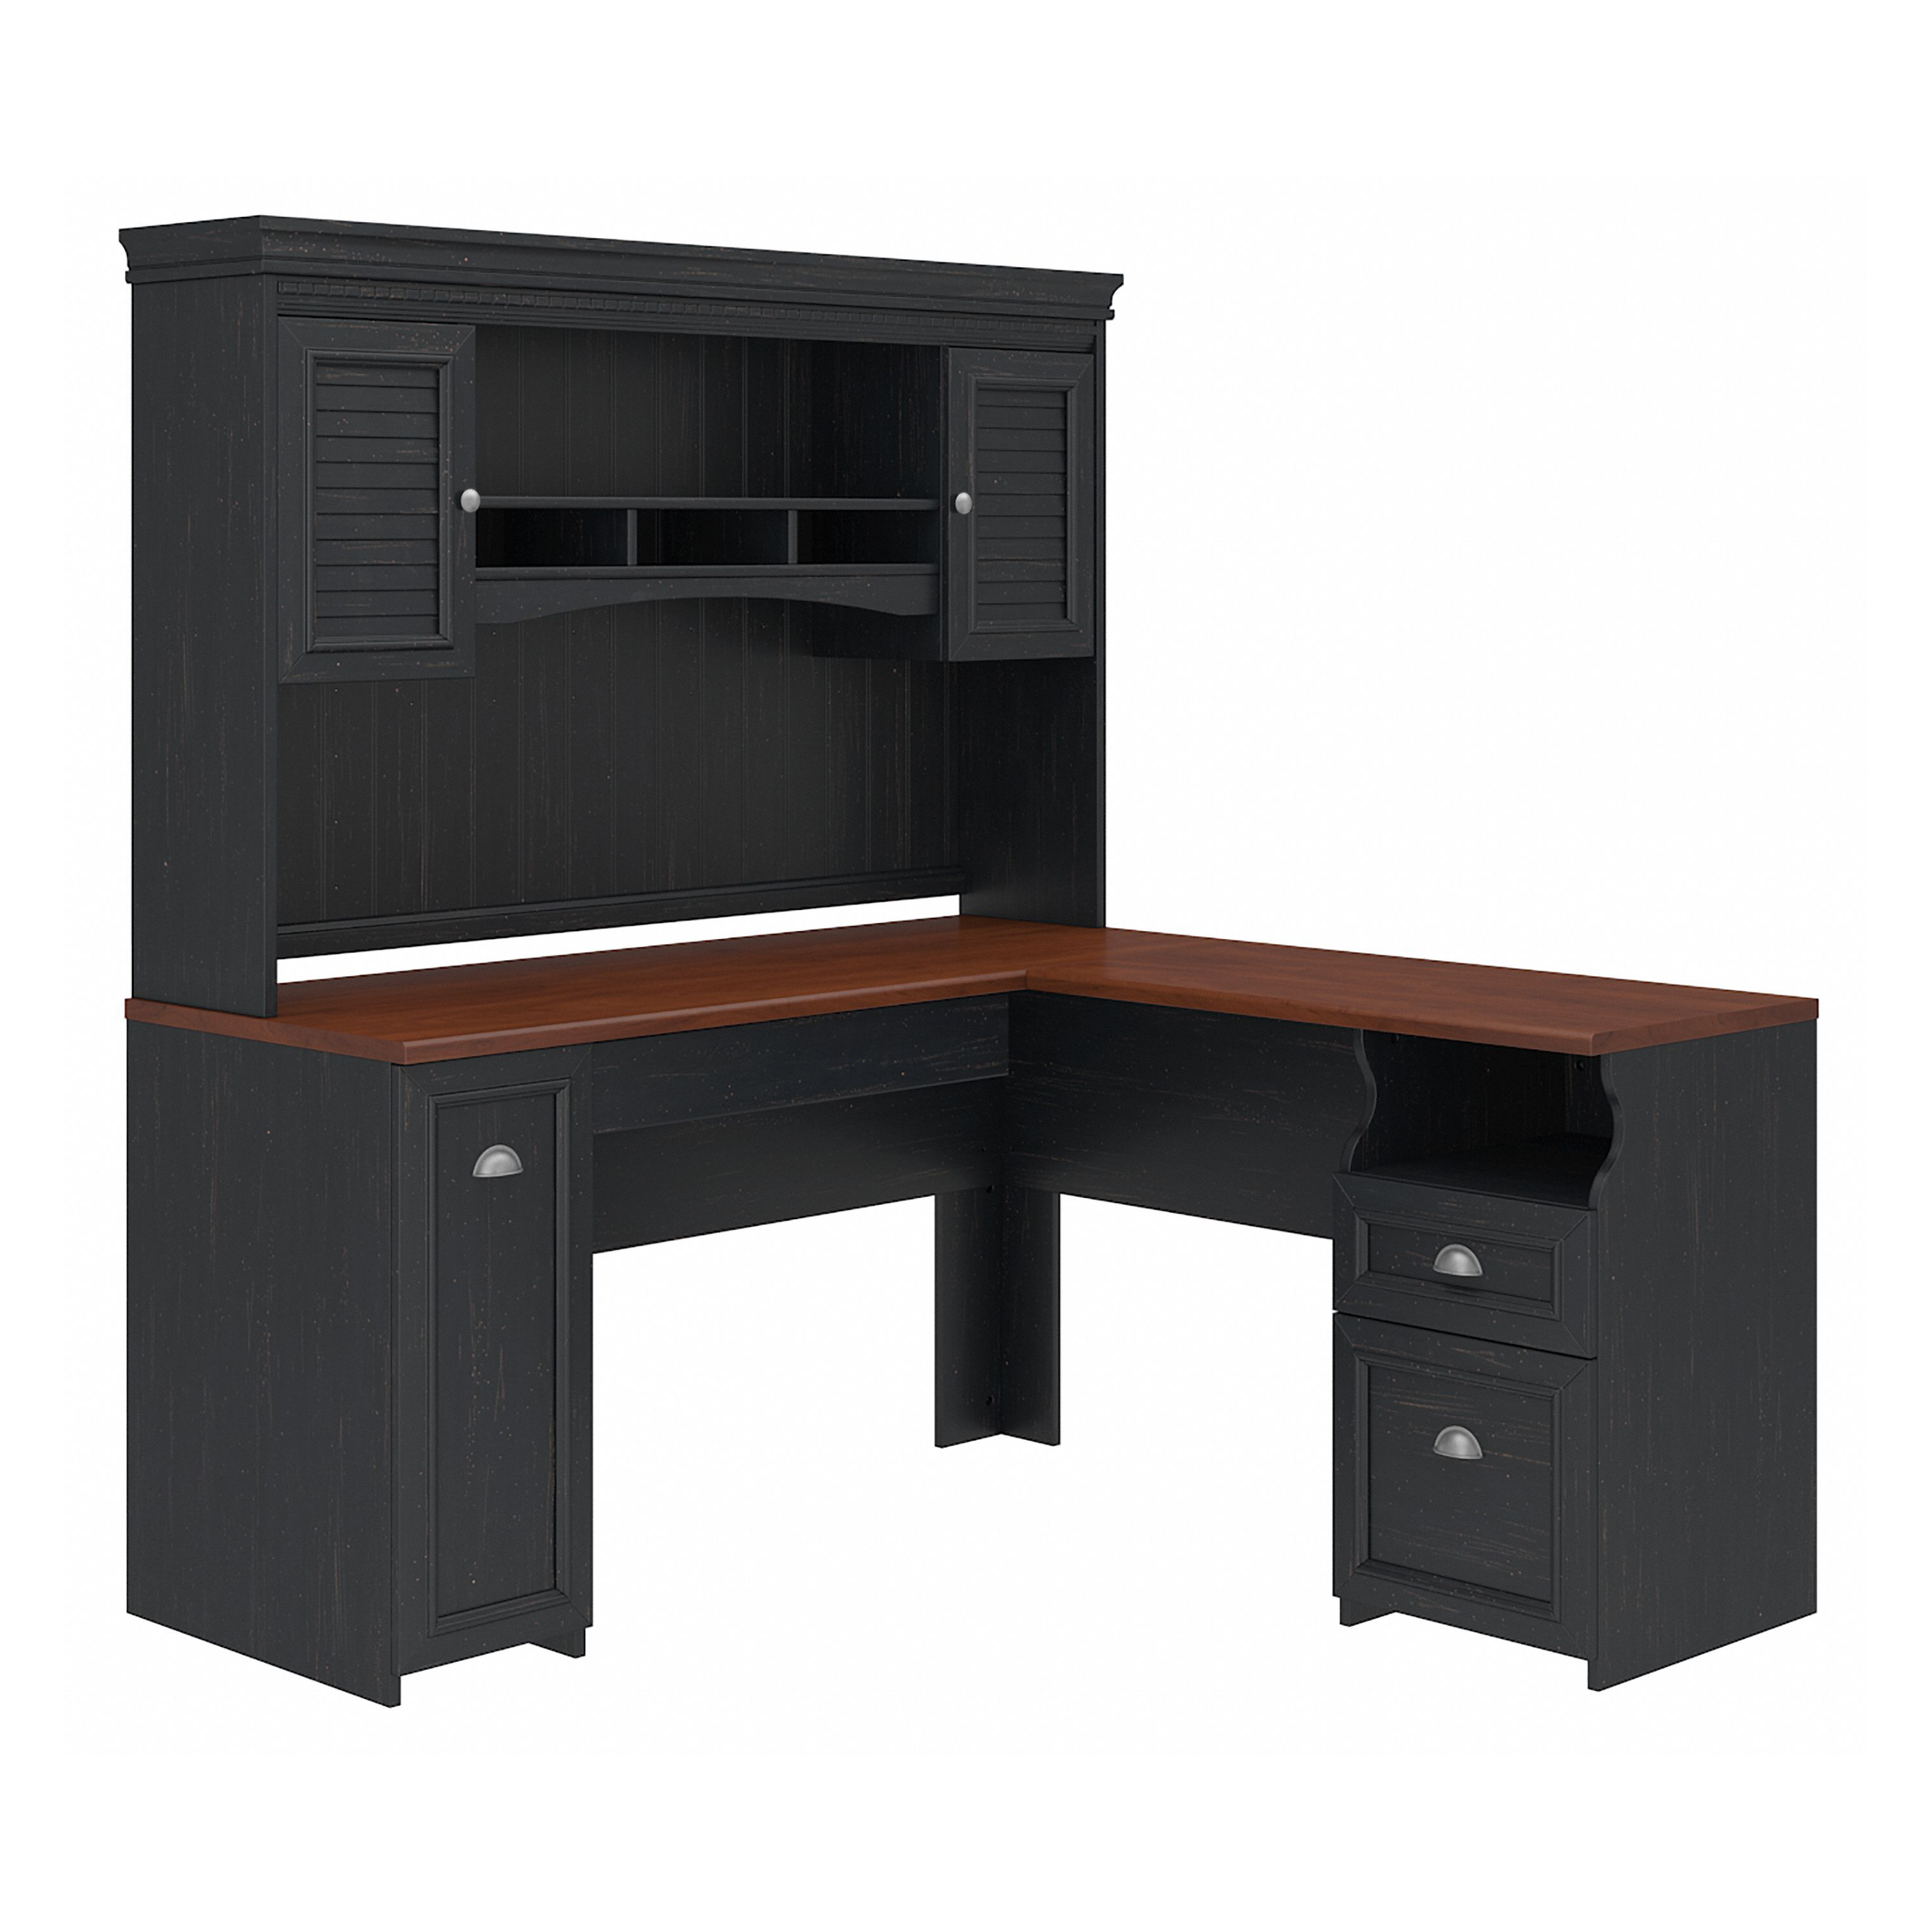 Shop Bush Furniture Fairview 60W L Shaped Desk with Hutch 02 FV004AB #color_antique black/hansen cherry